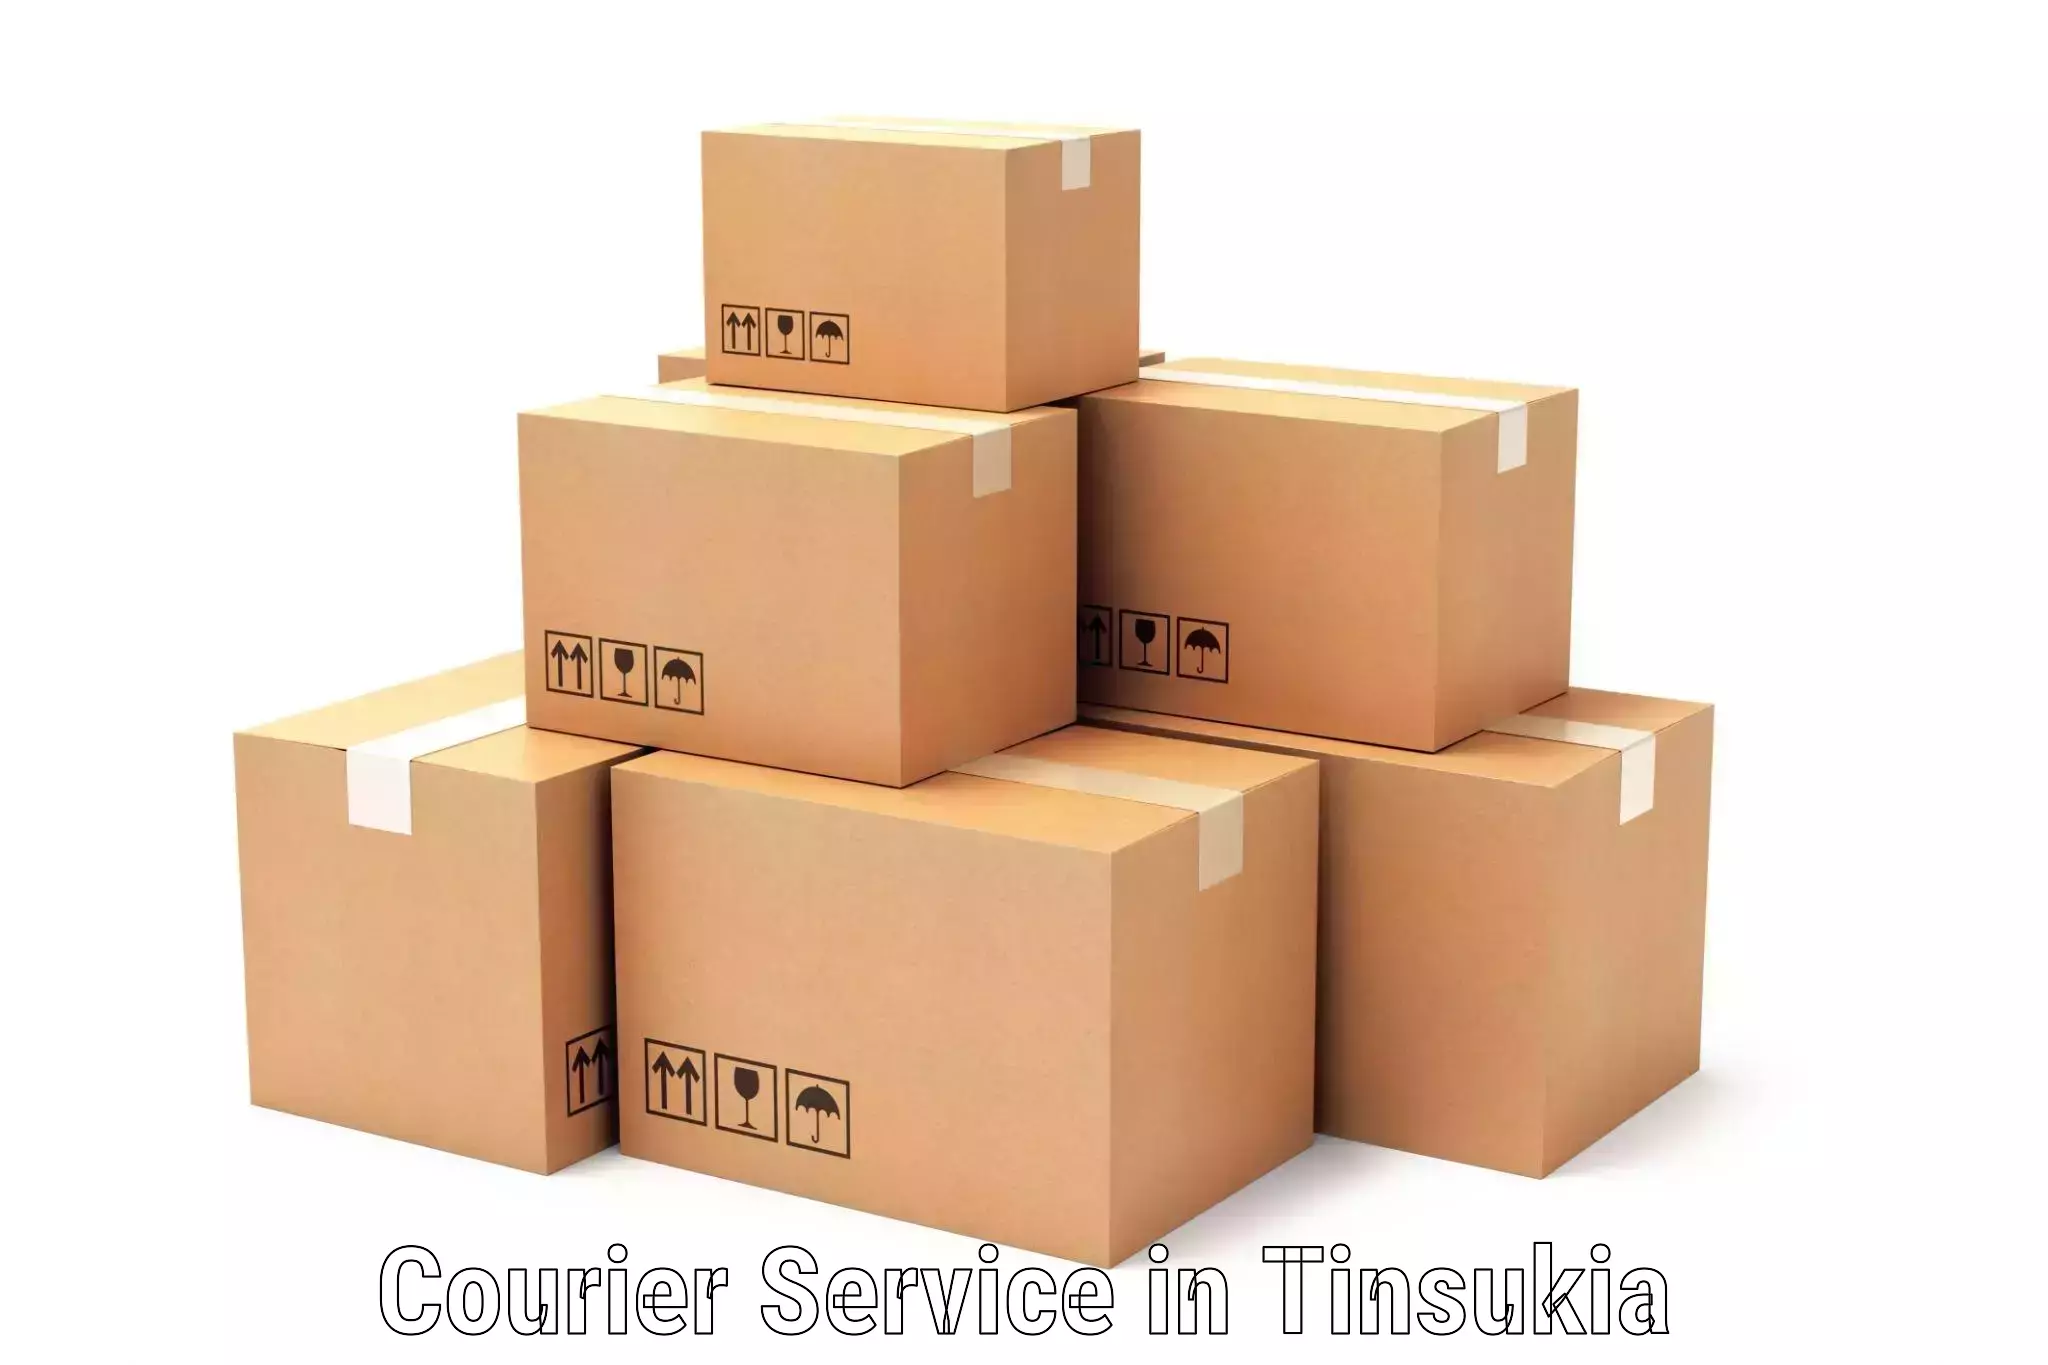 Courier service comparison in Tinsukia